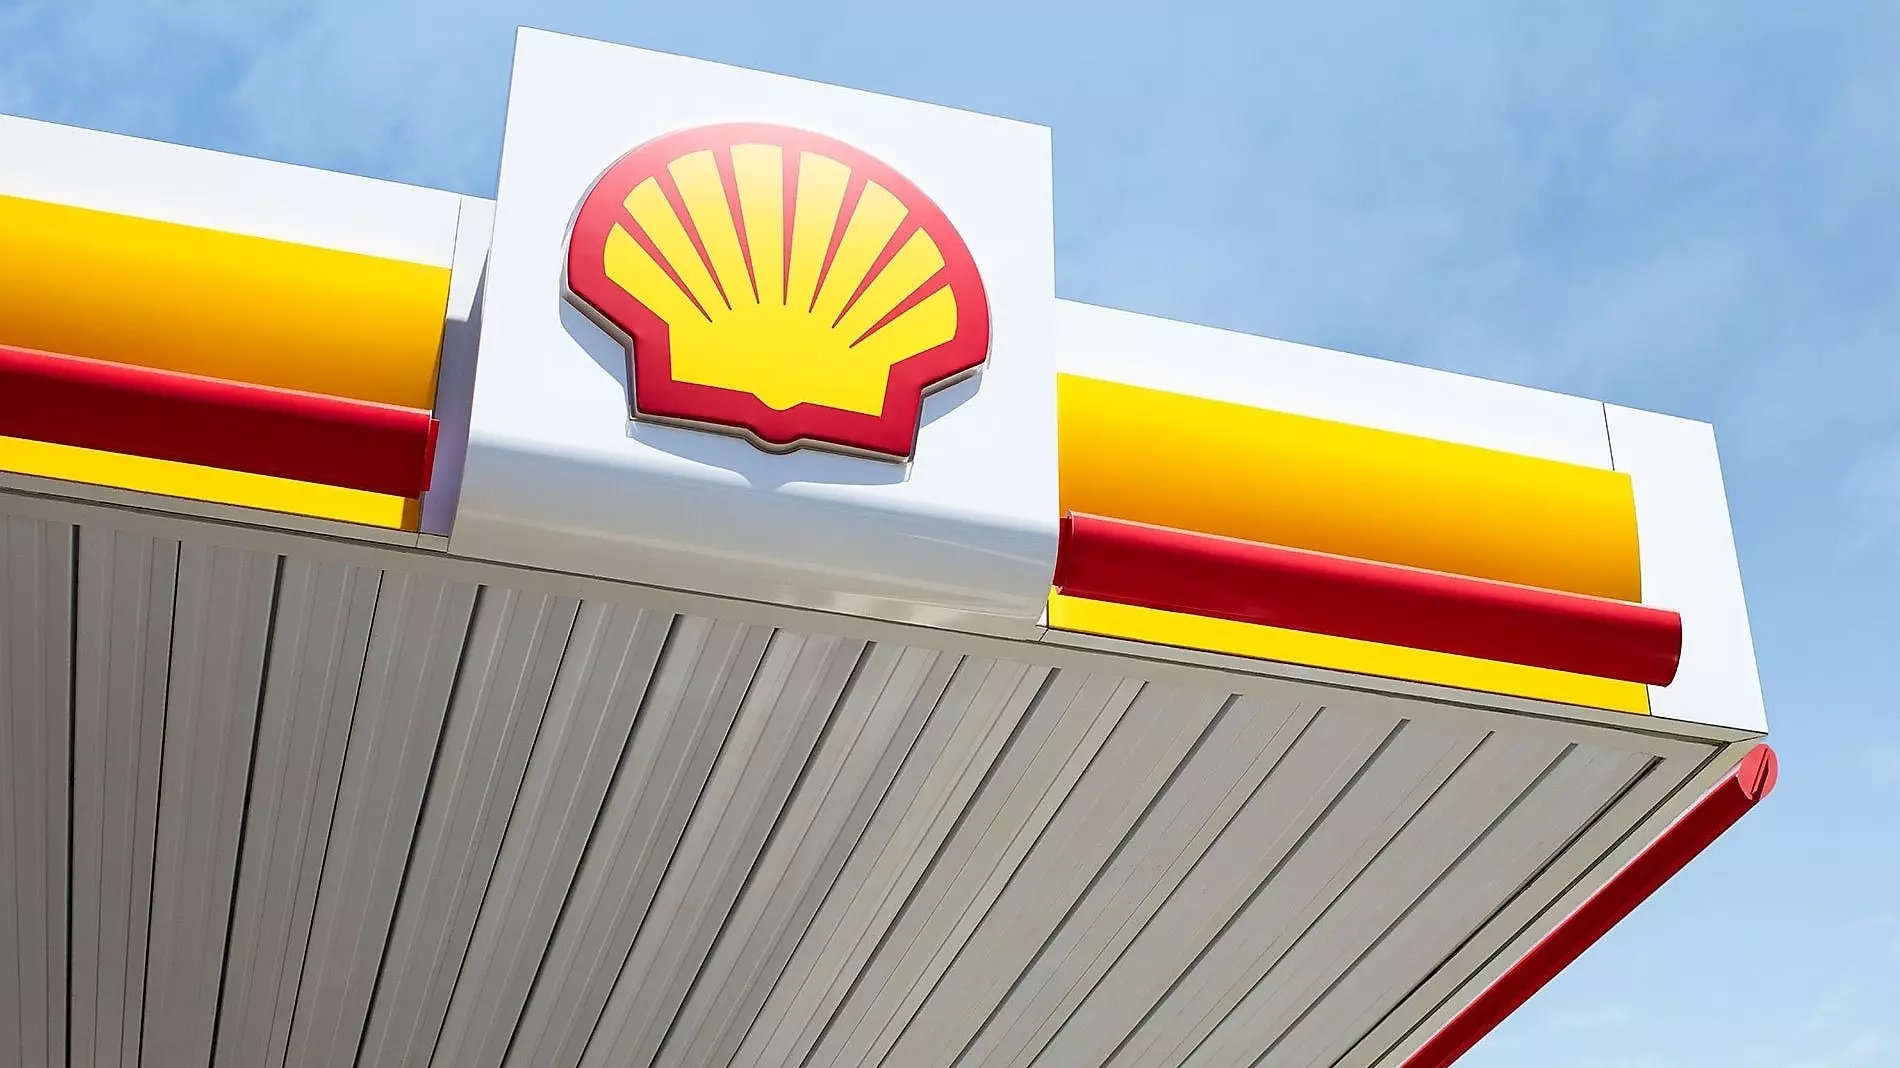 Сравнительные результаты по СПГ у Shell просядут, по нефти — вырастут